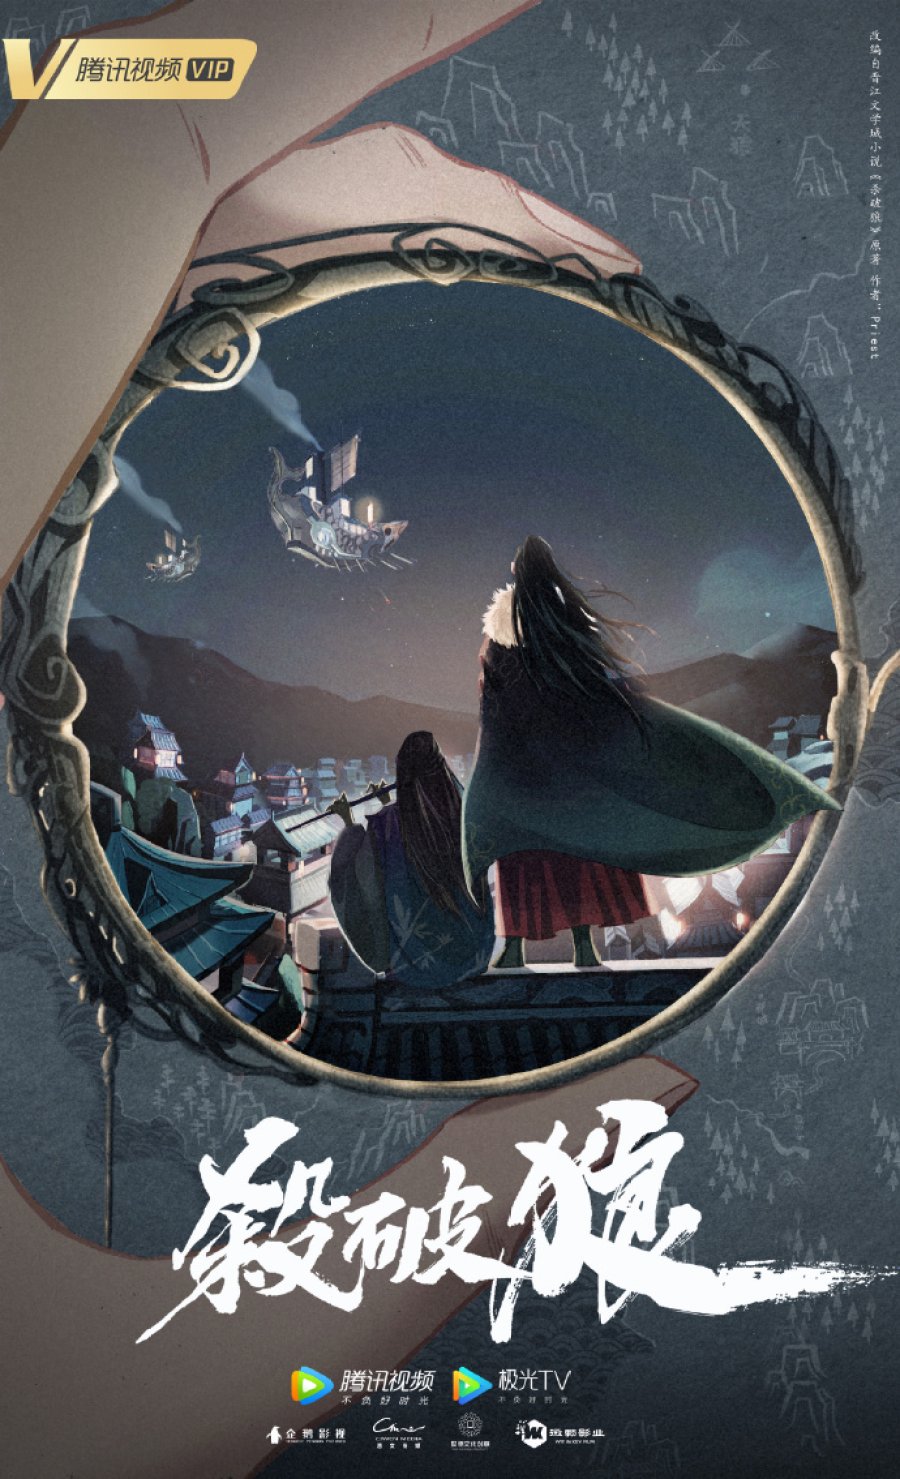 Phim đam mỹ Trung Quốc Sát Phá Lang – Winner is King